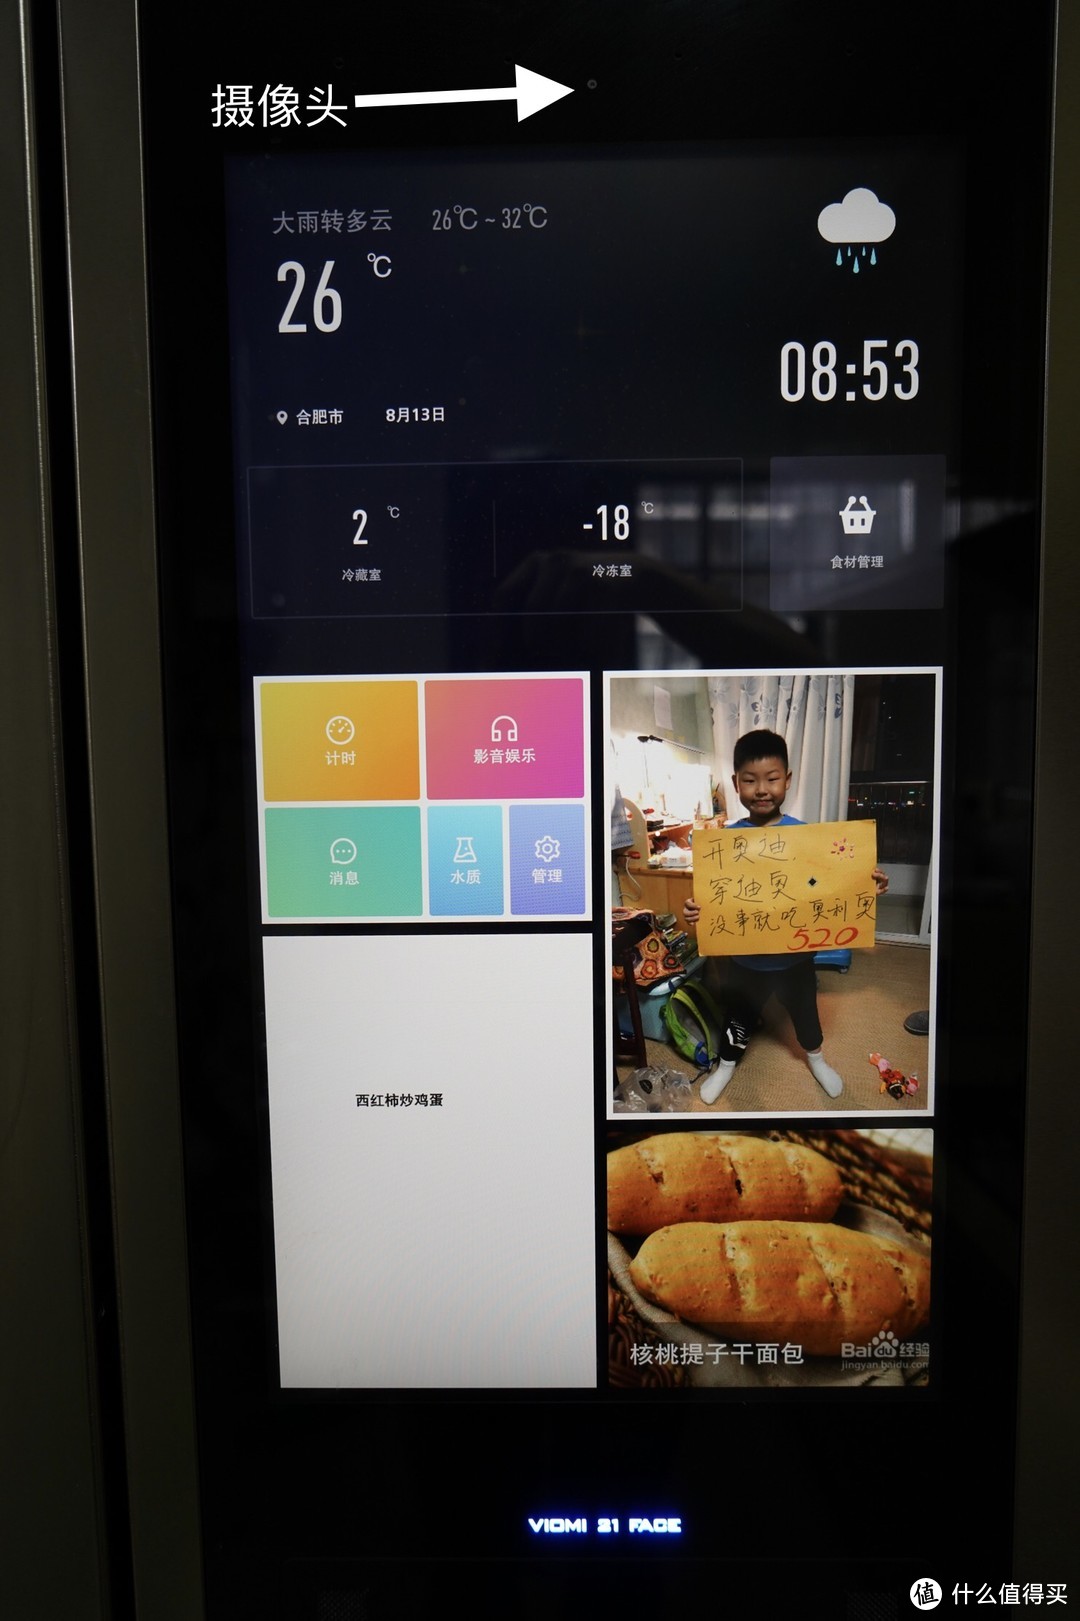 在冰箱上装个21寸的大屏幕，体验到底有什么不同？